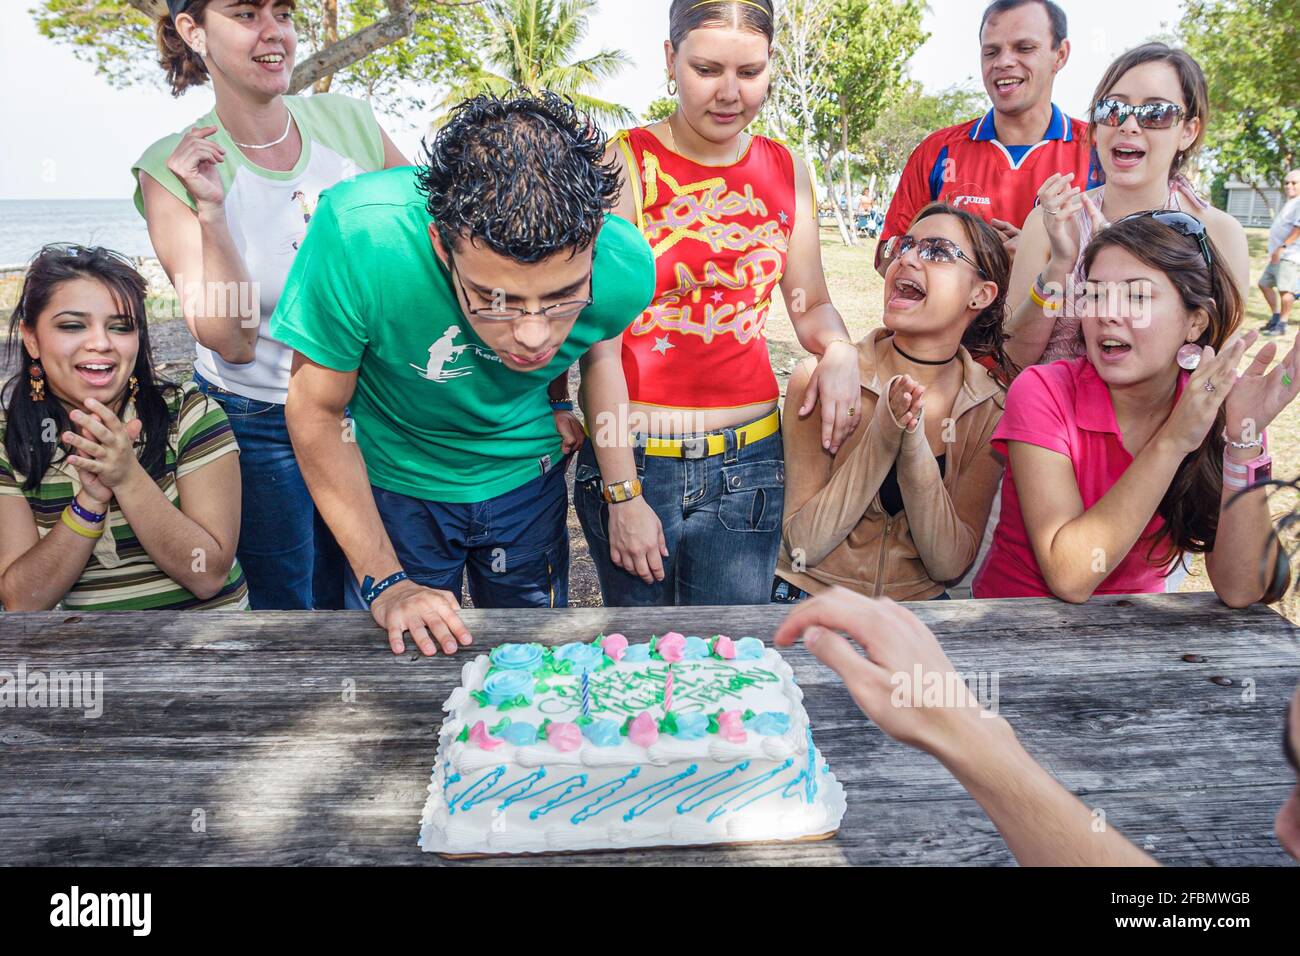 Miami Florida,Homestead Biscayne National Park,gli studenti ispanici adolescenti amici ragazzi ragazze,festeggiando la torta di compleanno che soffia fuori la candela Foto Stock